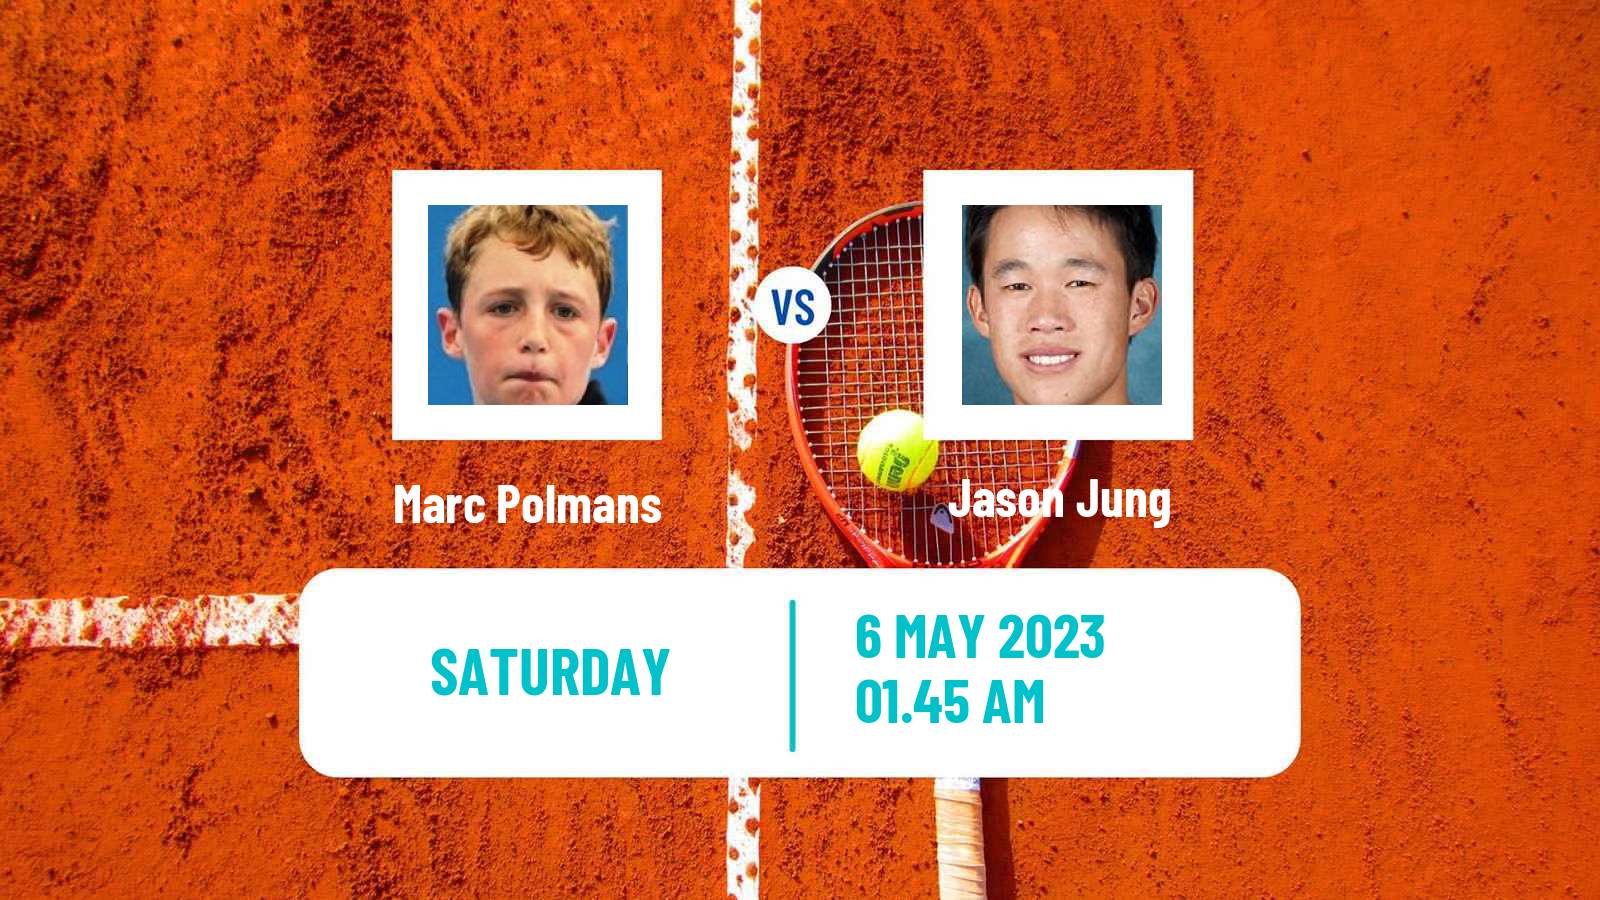 Tennis ATP Challenger Marc Polmans - Jason Jung